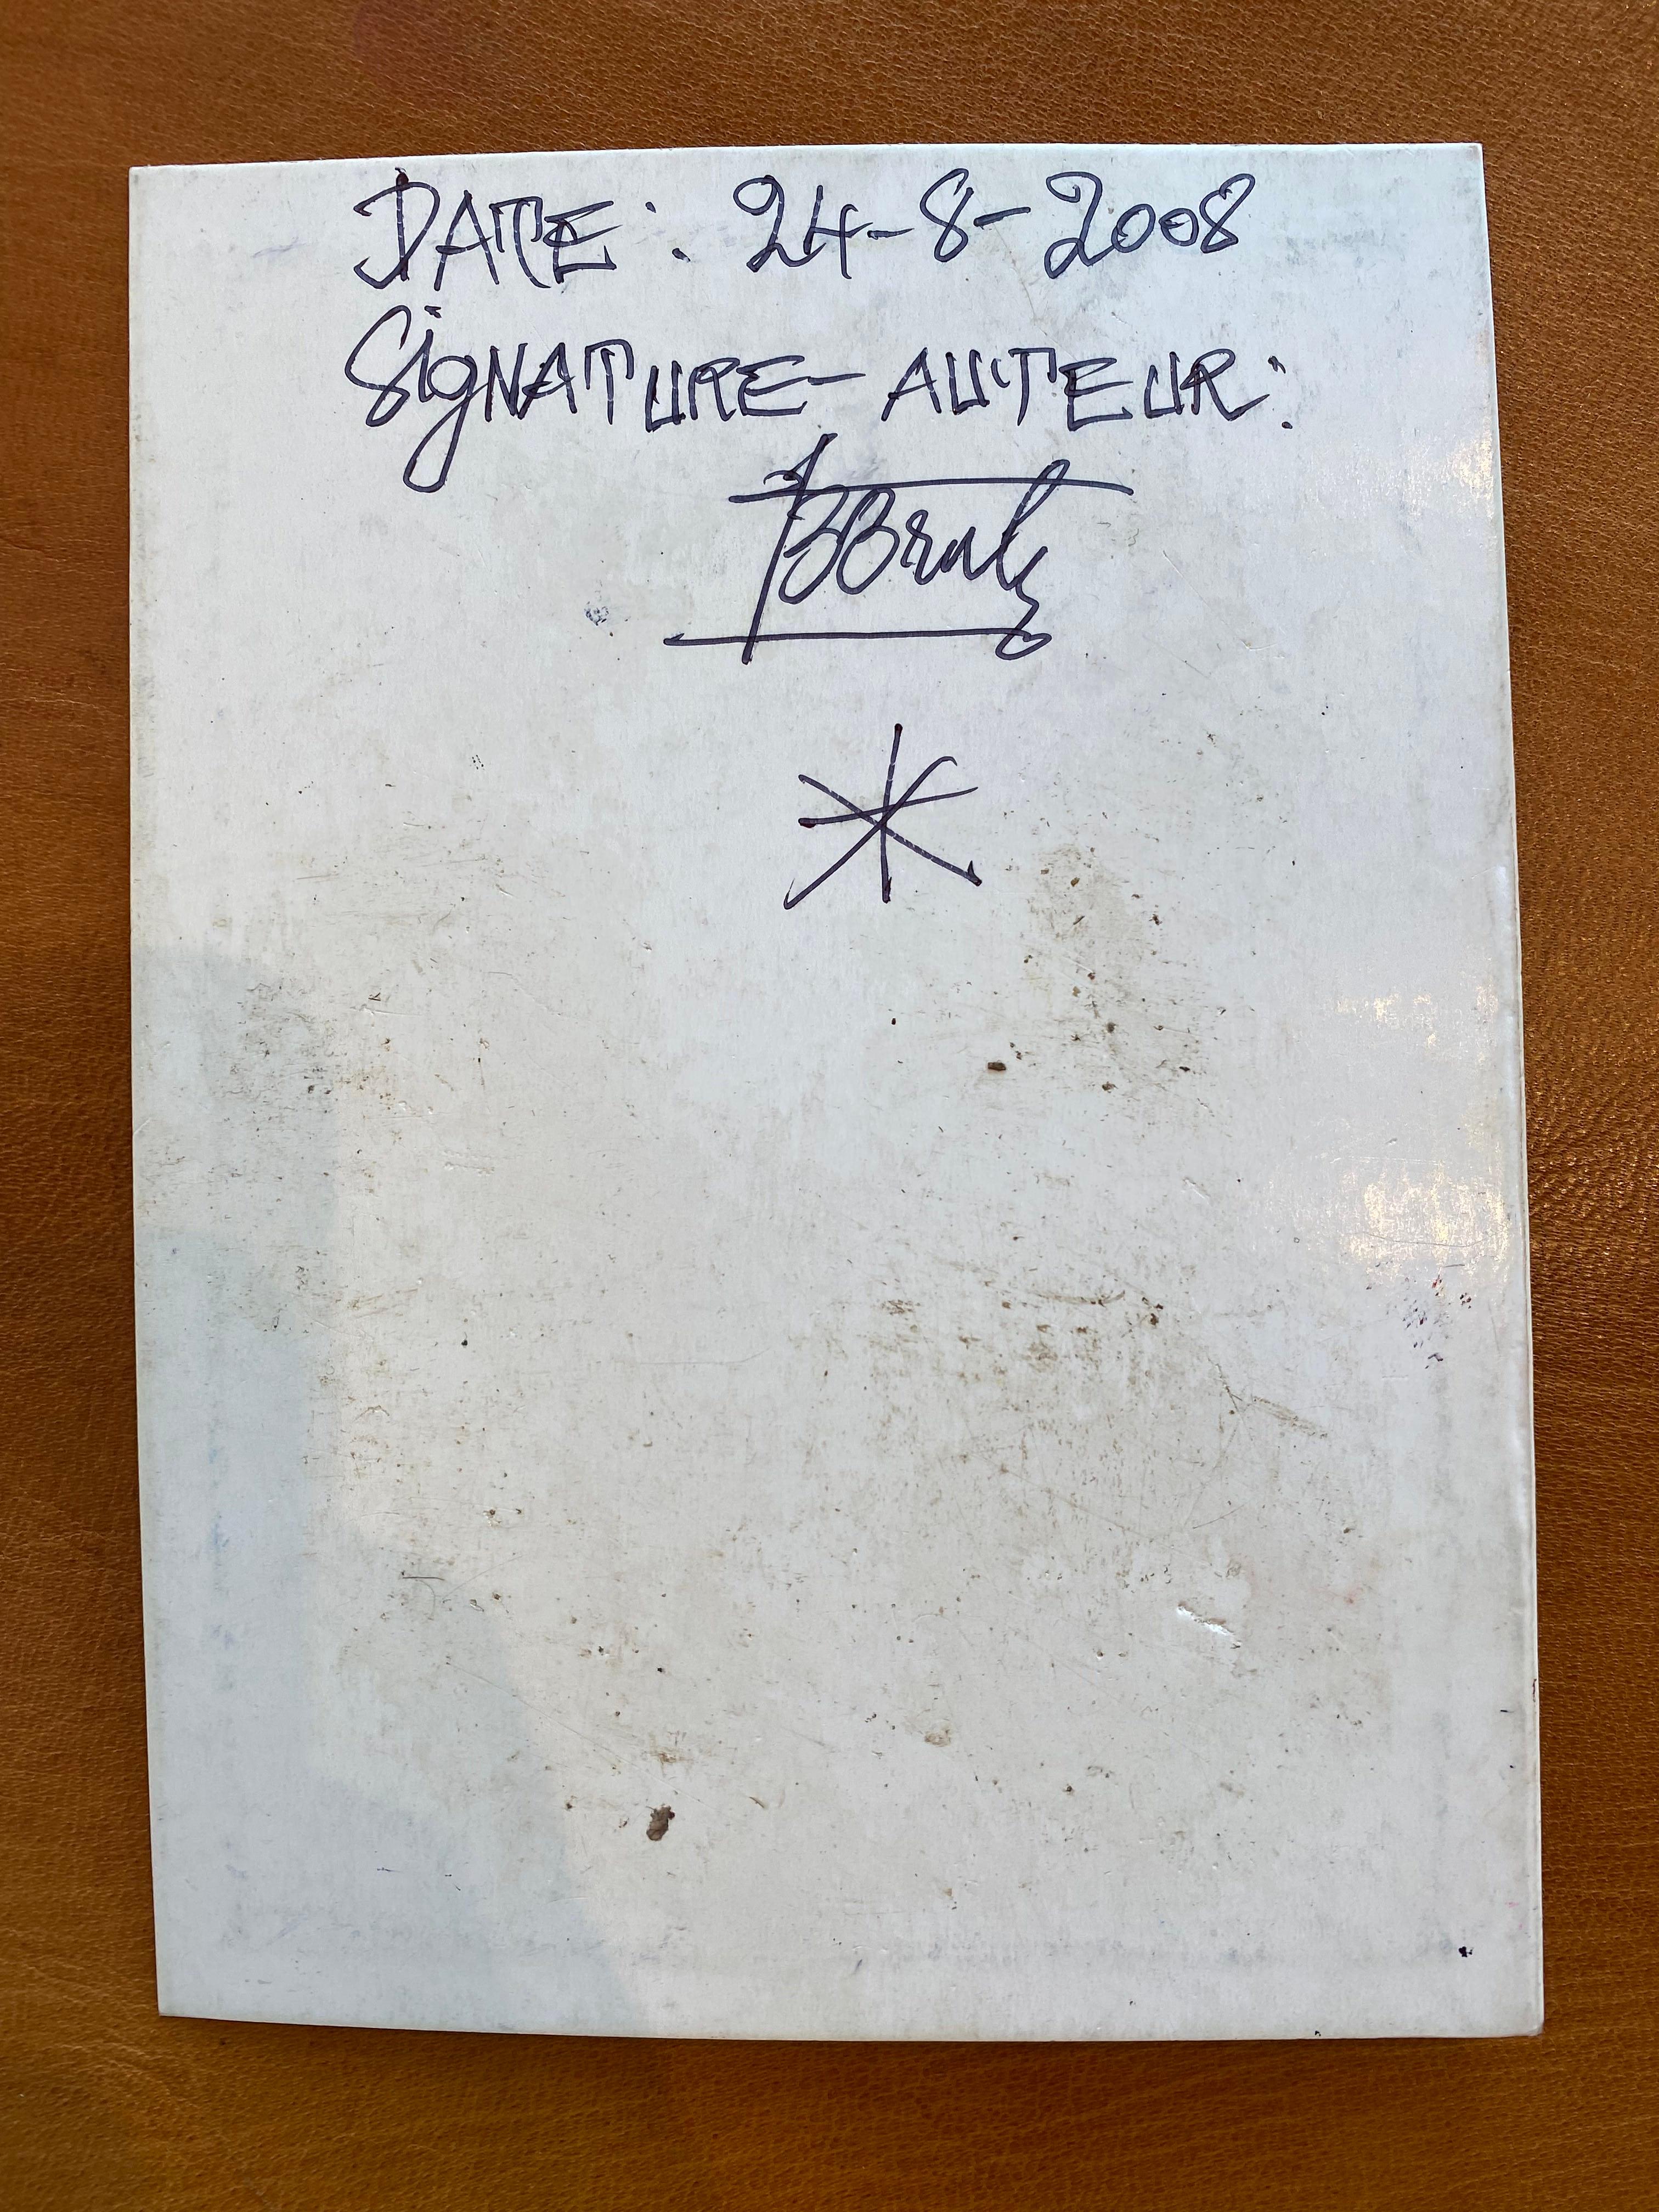 Frédéric Bruly Bouabré
Un Enfant Vu Assis Sur
Kugelschreiber, Buntstifte und Buntstift auf Karton
7.5 x 5.5

Am 11. März 1948 hatte er eine transzendentale Vision. Der Himmel öffnete sich, sieben Sonnen tanzten um ein Zentralgestirn, und Bouabré